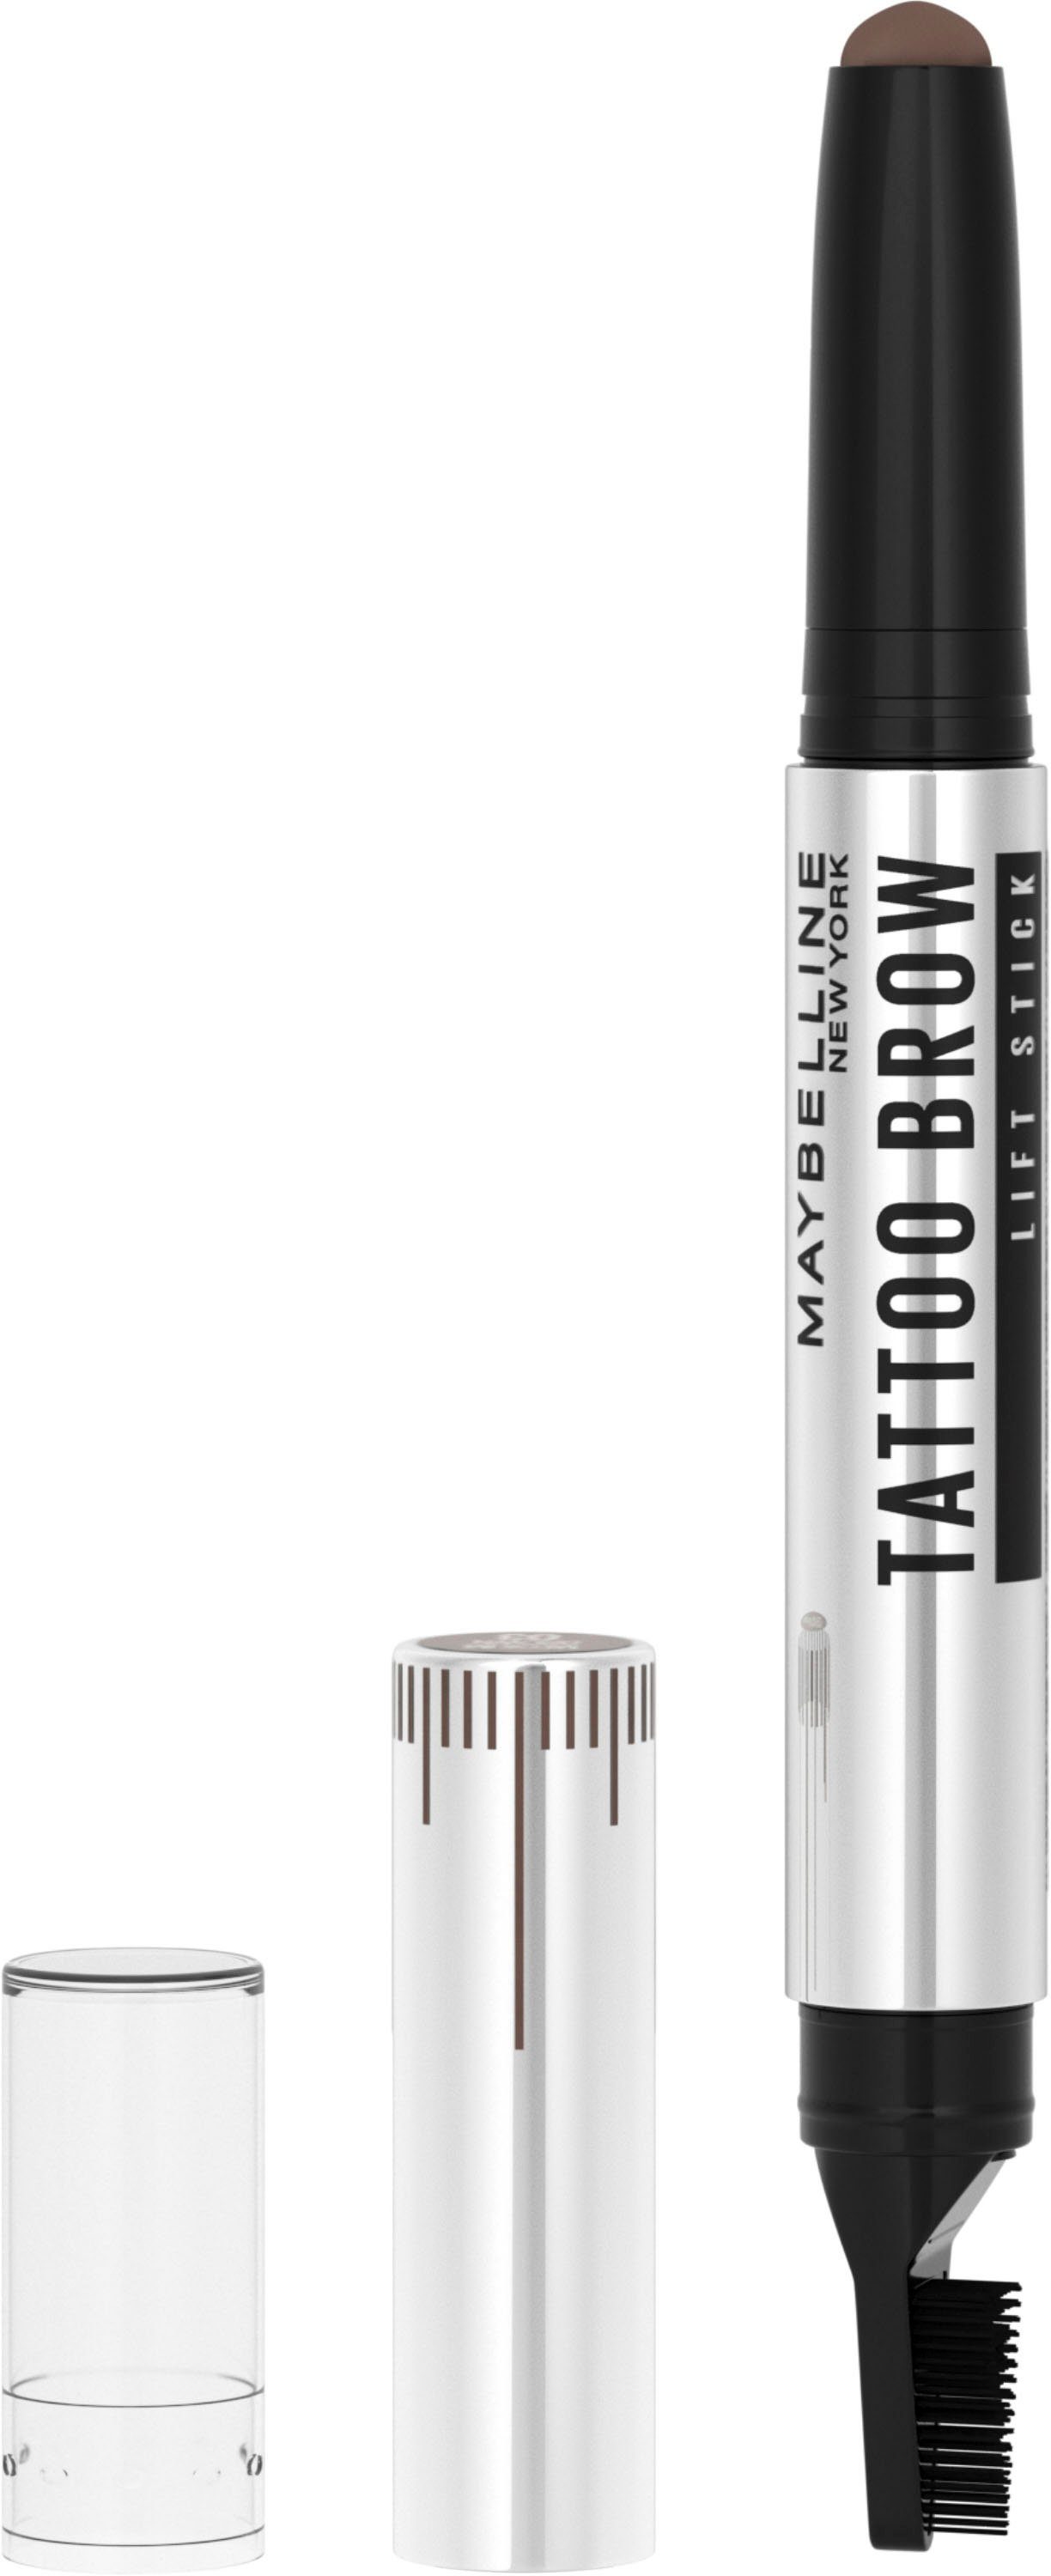 MAYBELLINE NEW YORK Augenbrauen-Gel Tattoo Brown 3 Augen-Make-Up Brow Lift, mit 2-1 Lifter-Bürste, Wachs und Medium